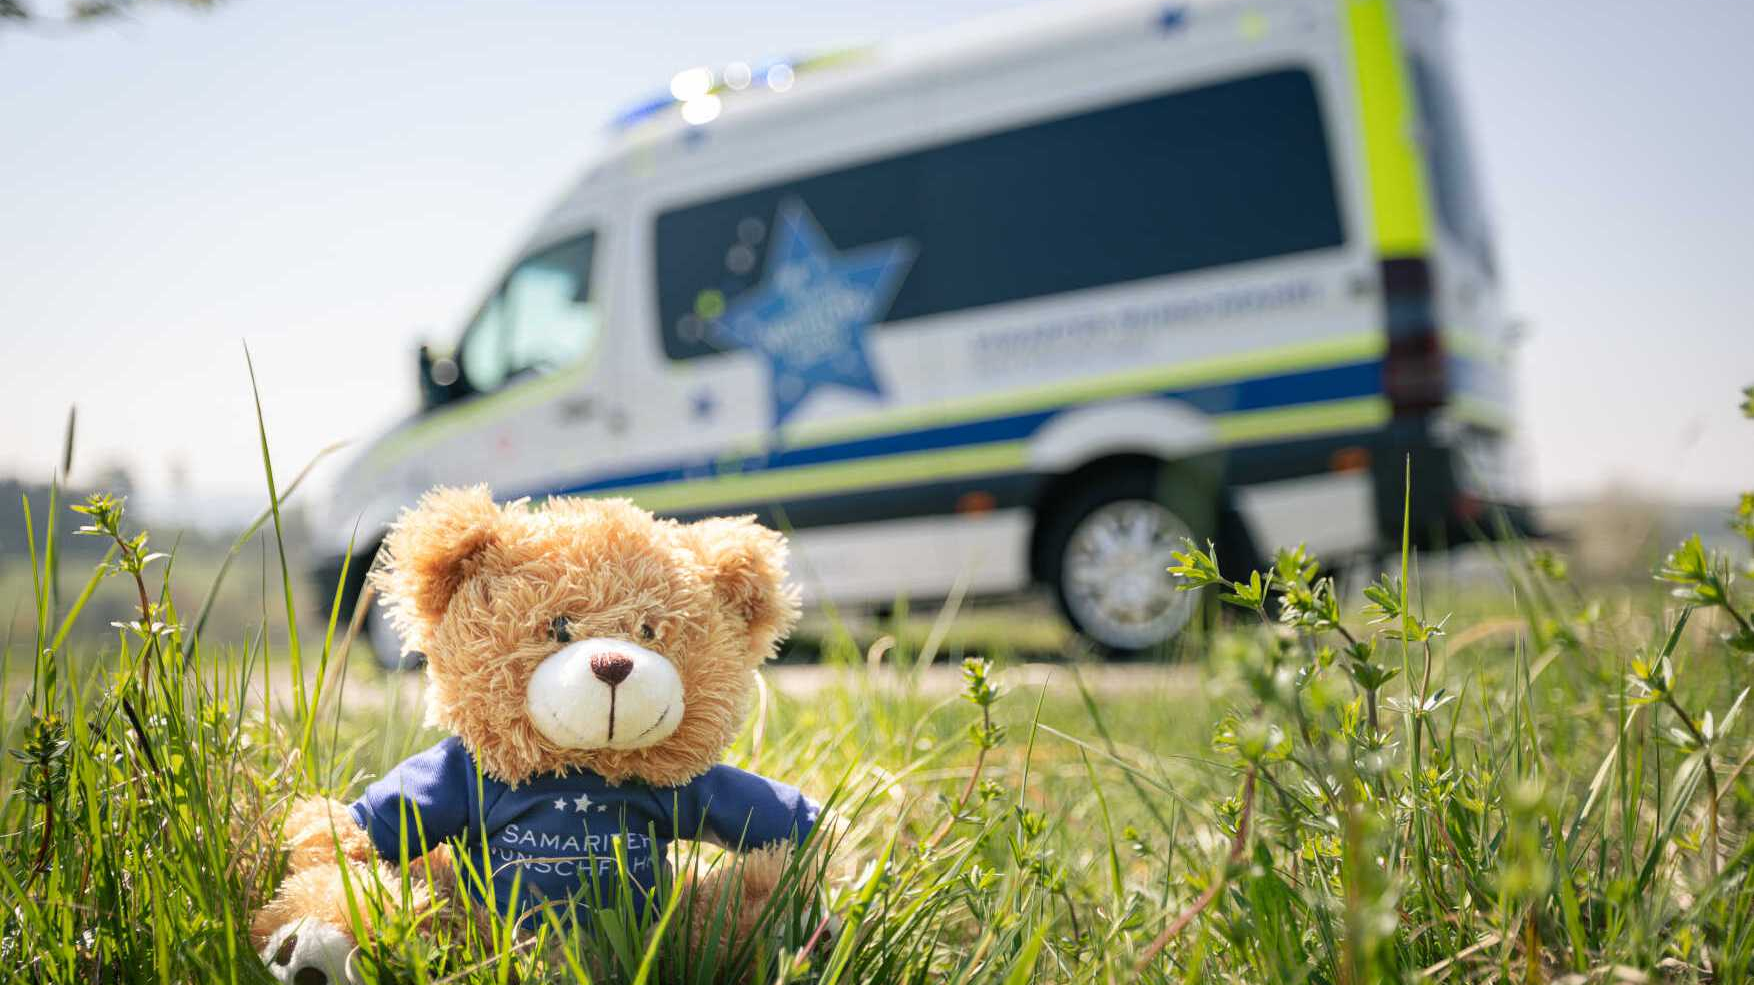 Wunschfahrt-Auto mit Teddybären im Vordergrund